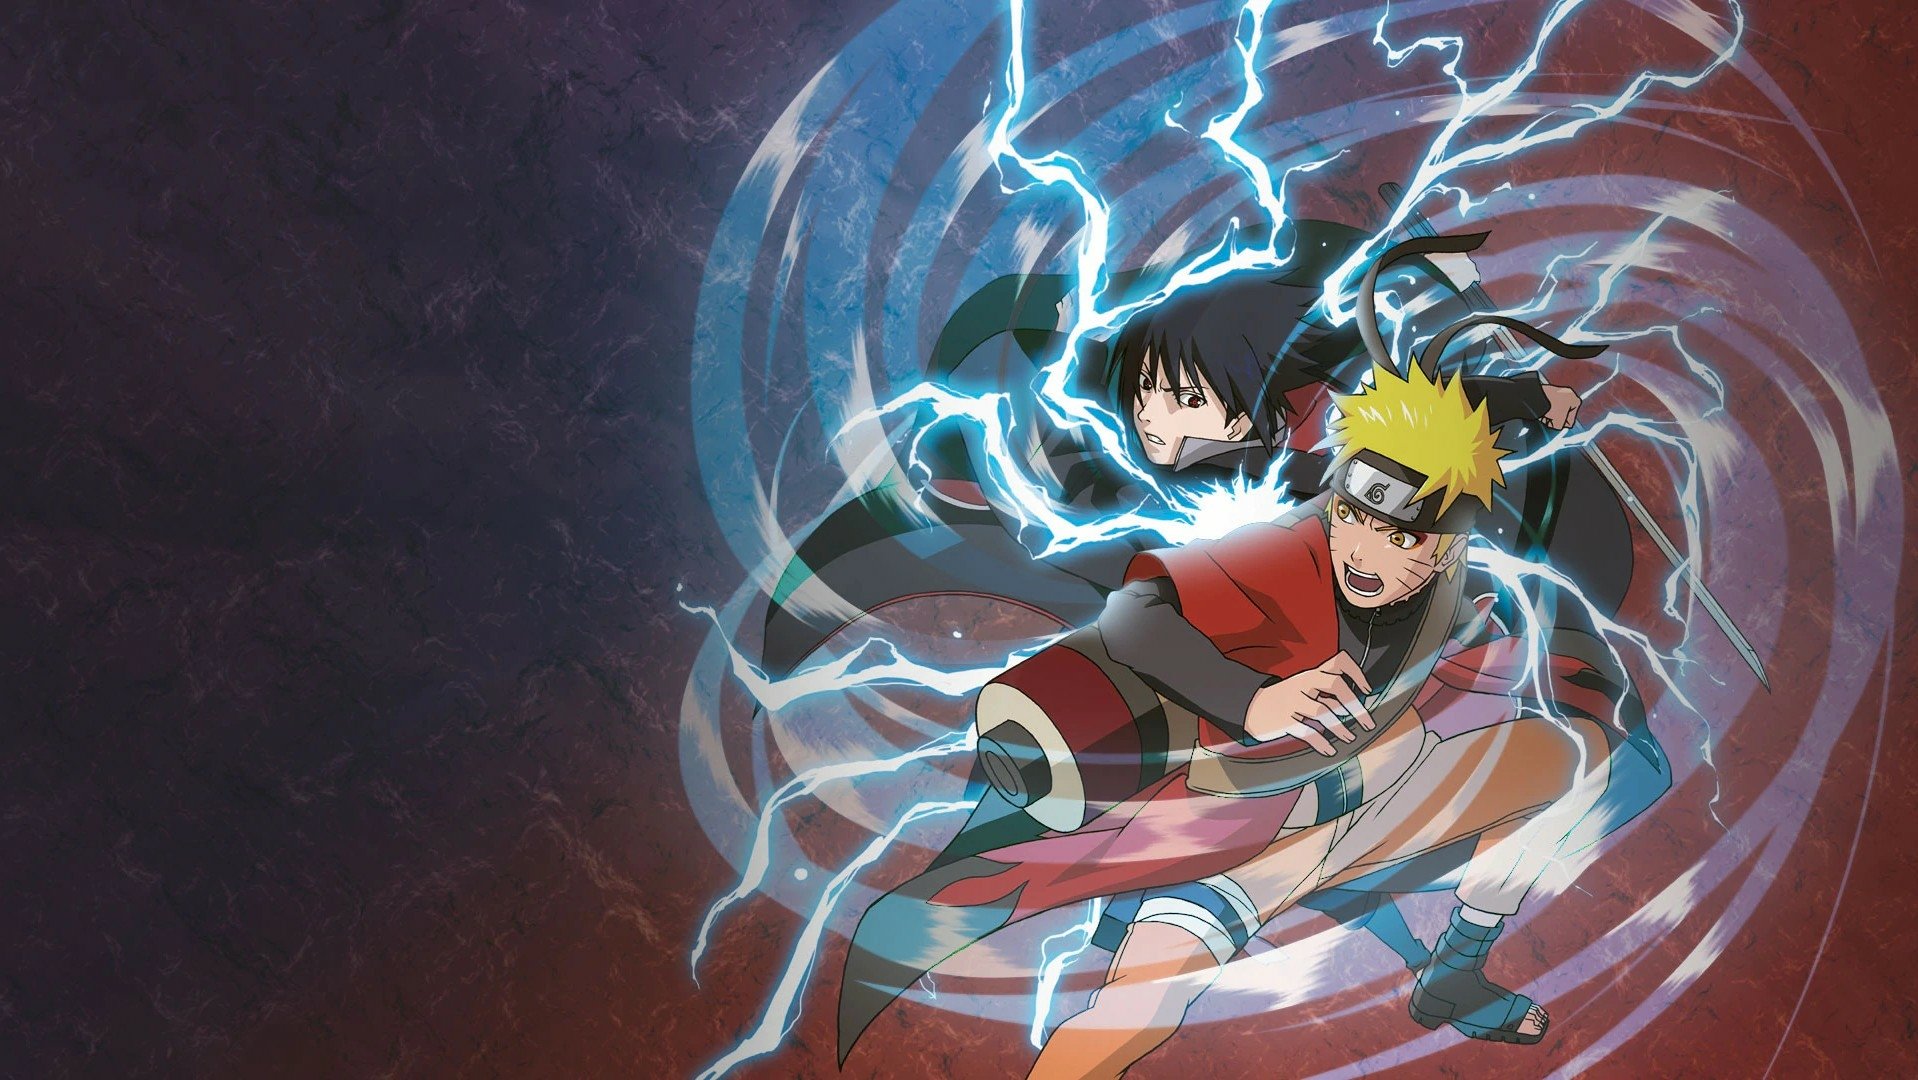 Naruto: Cùng đến với thế giới của cậu bé ninja tóc vàng, Naruto Uzumaki! Xem ảnh của Naruto sẽ khiến bạn đắm mình trong câu chuyện phiêu lưu hấp dẫn của anh chàng này.